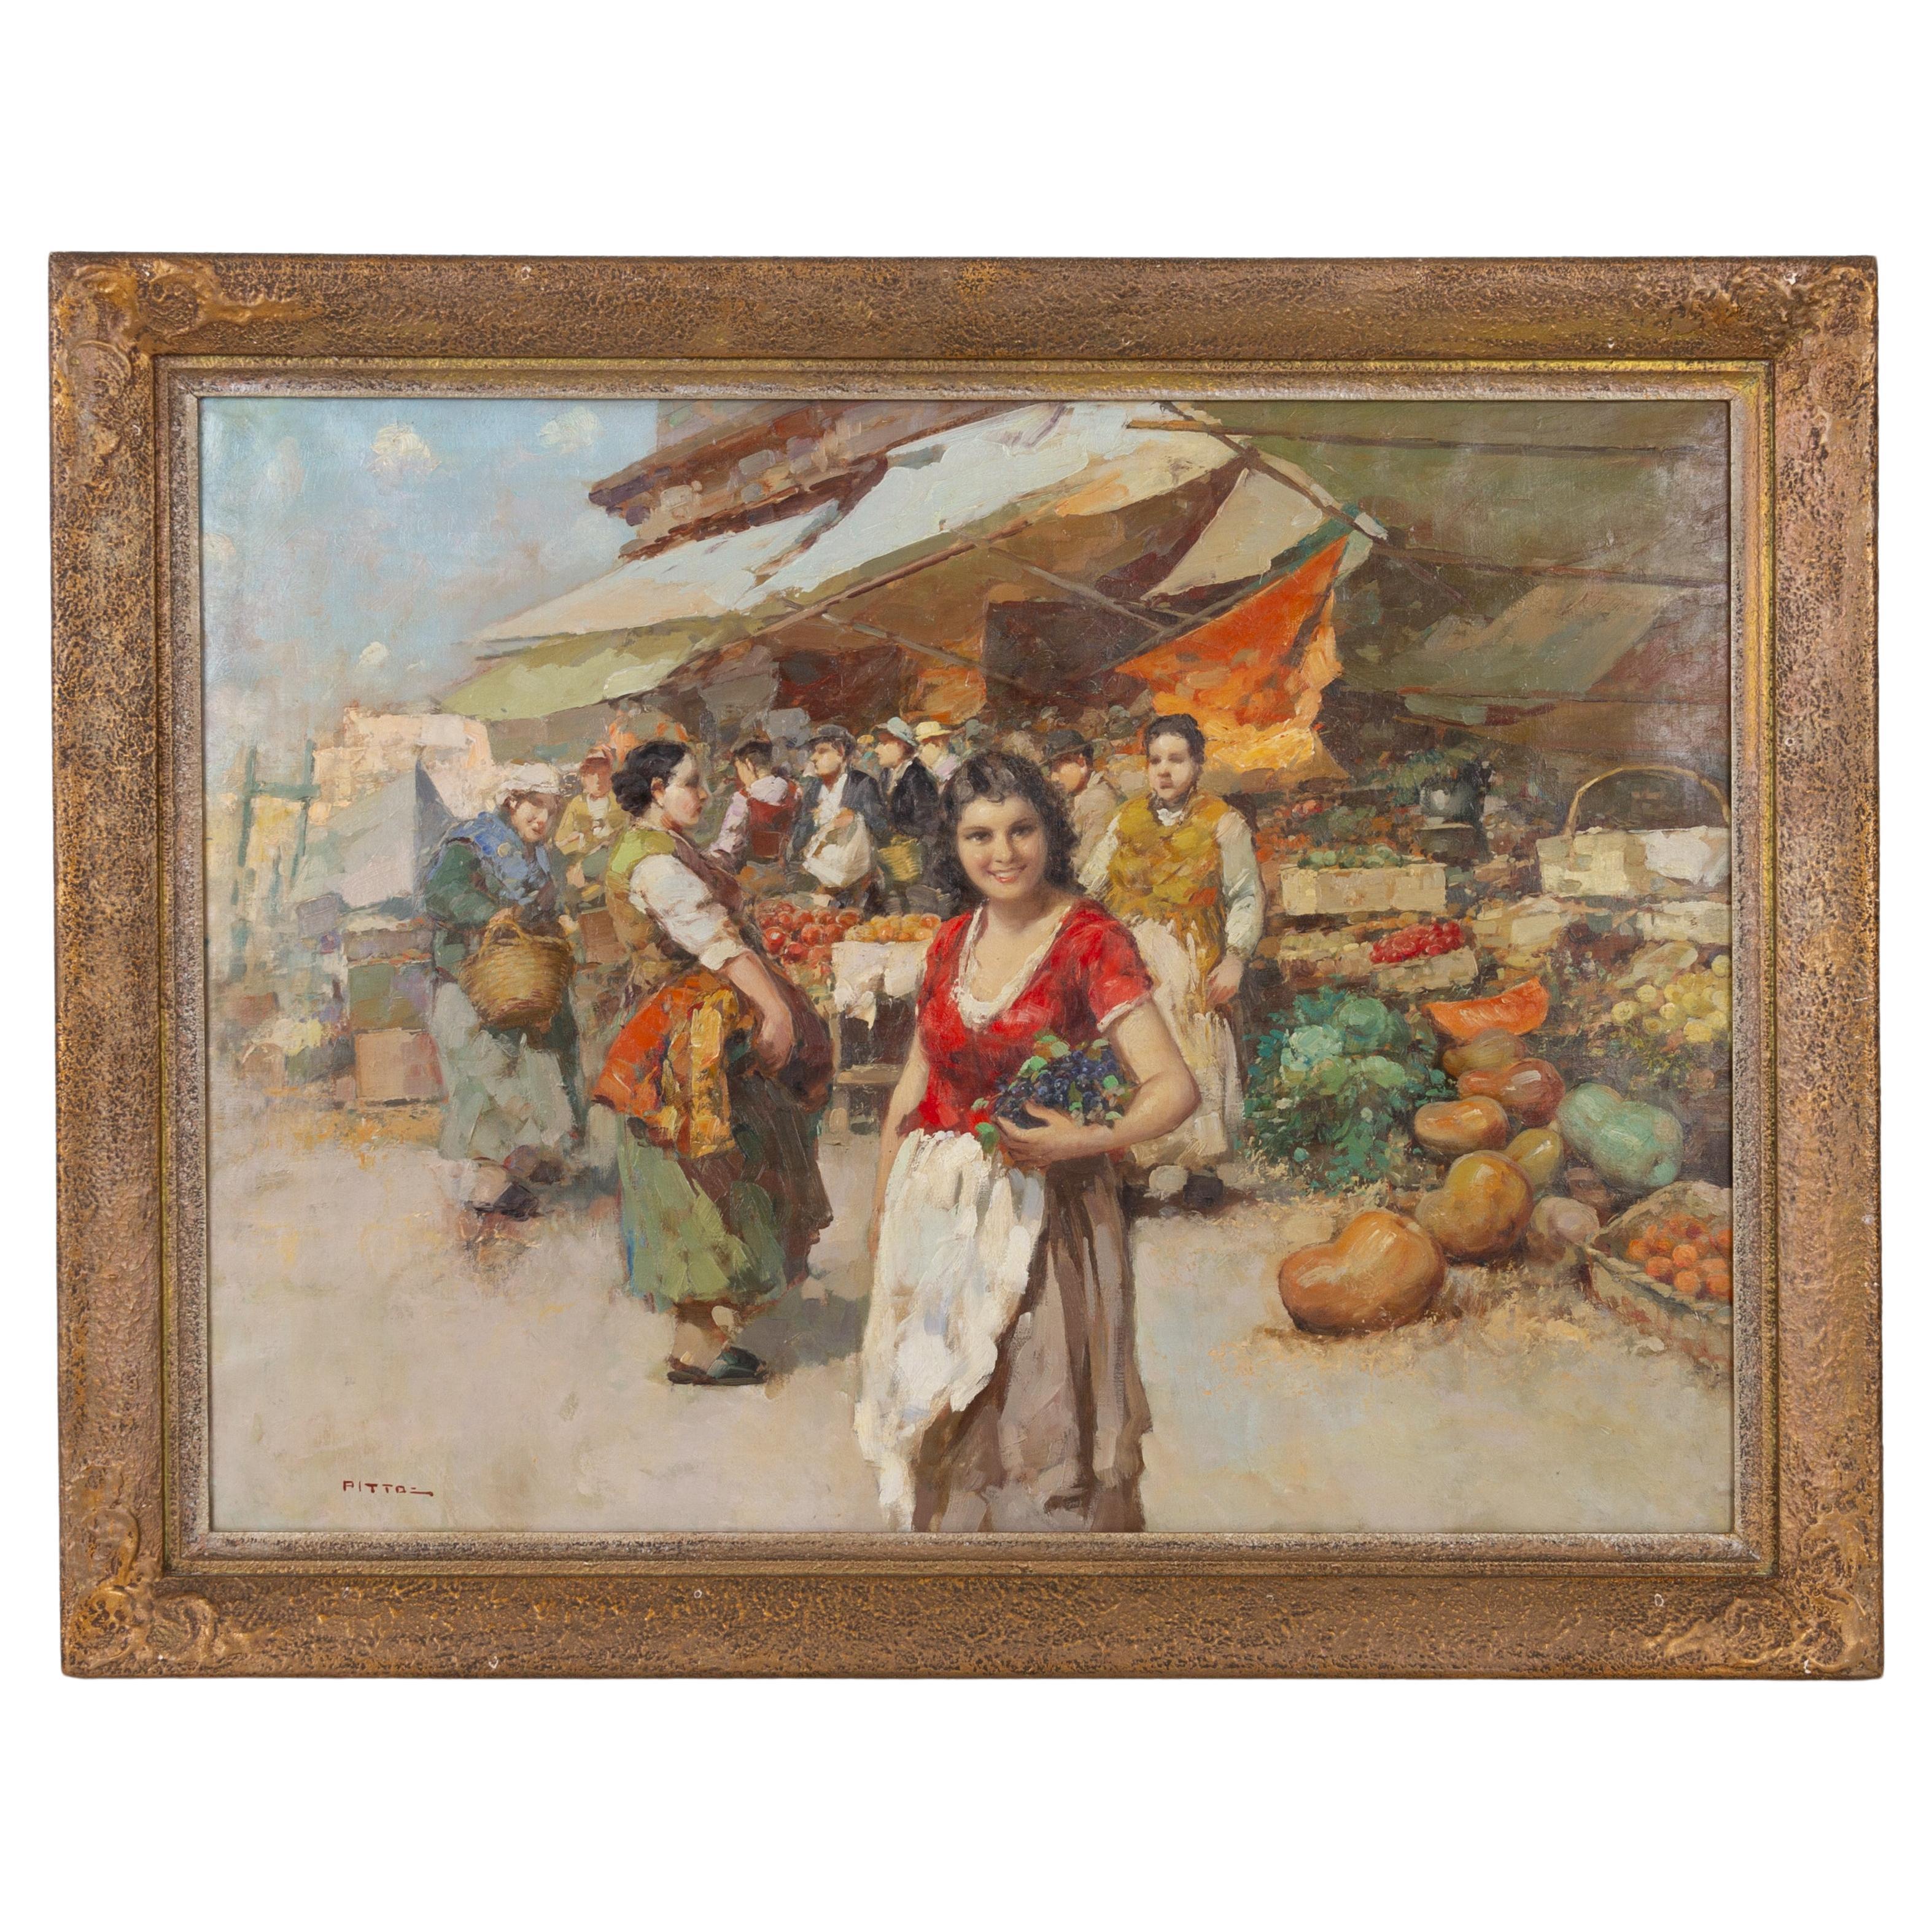 Giuseppe Pitto (Italian, 1857-1928) Large Italian Market Oil Painting 